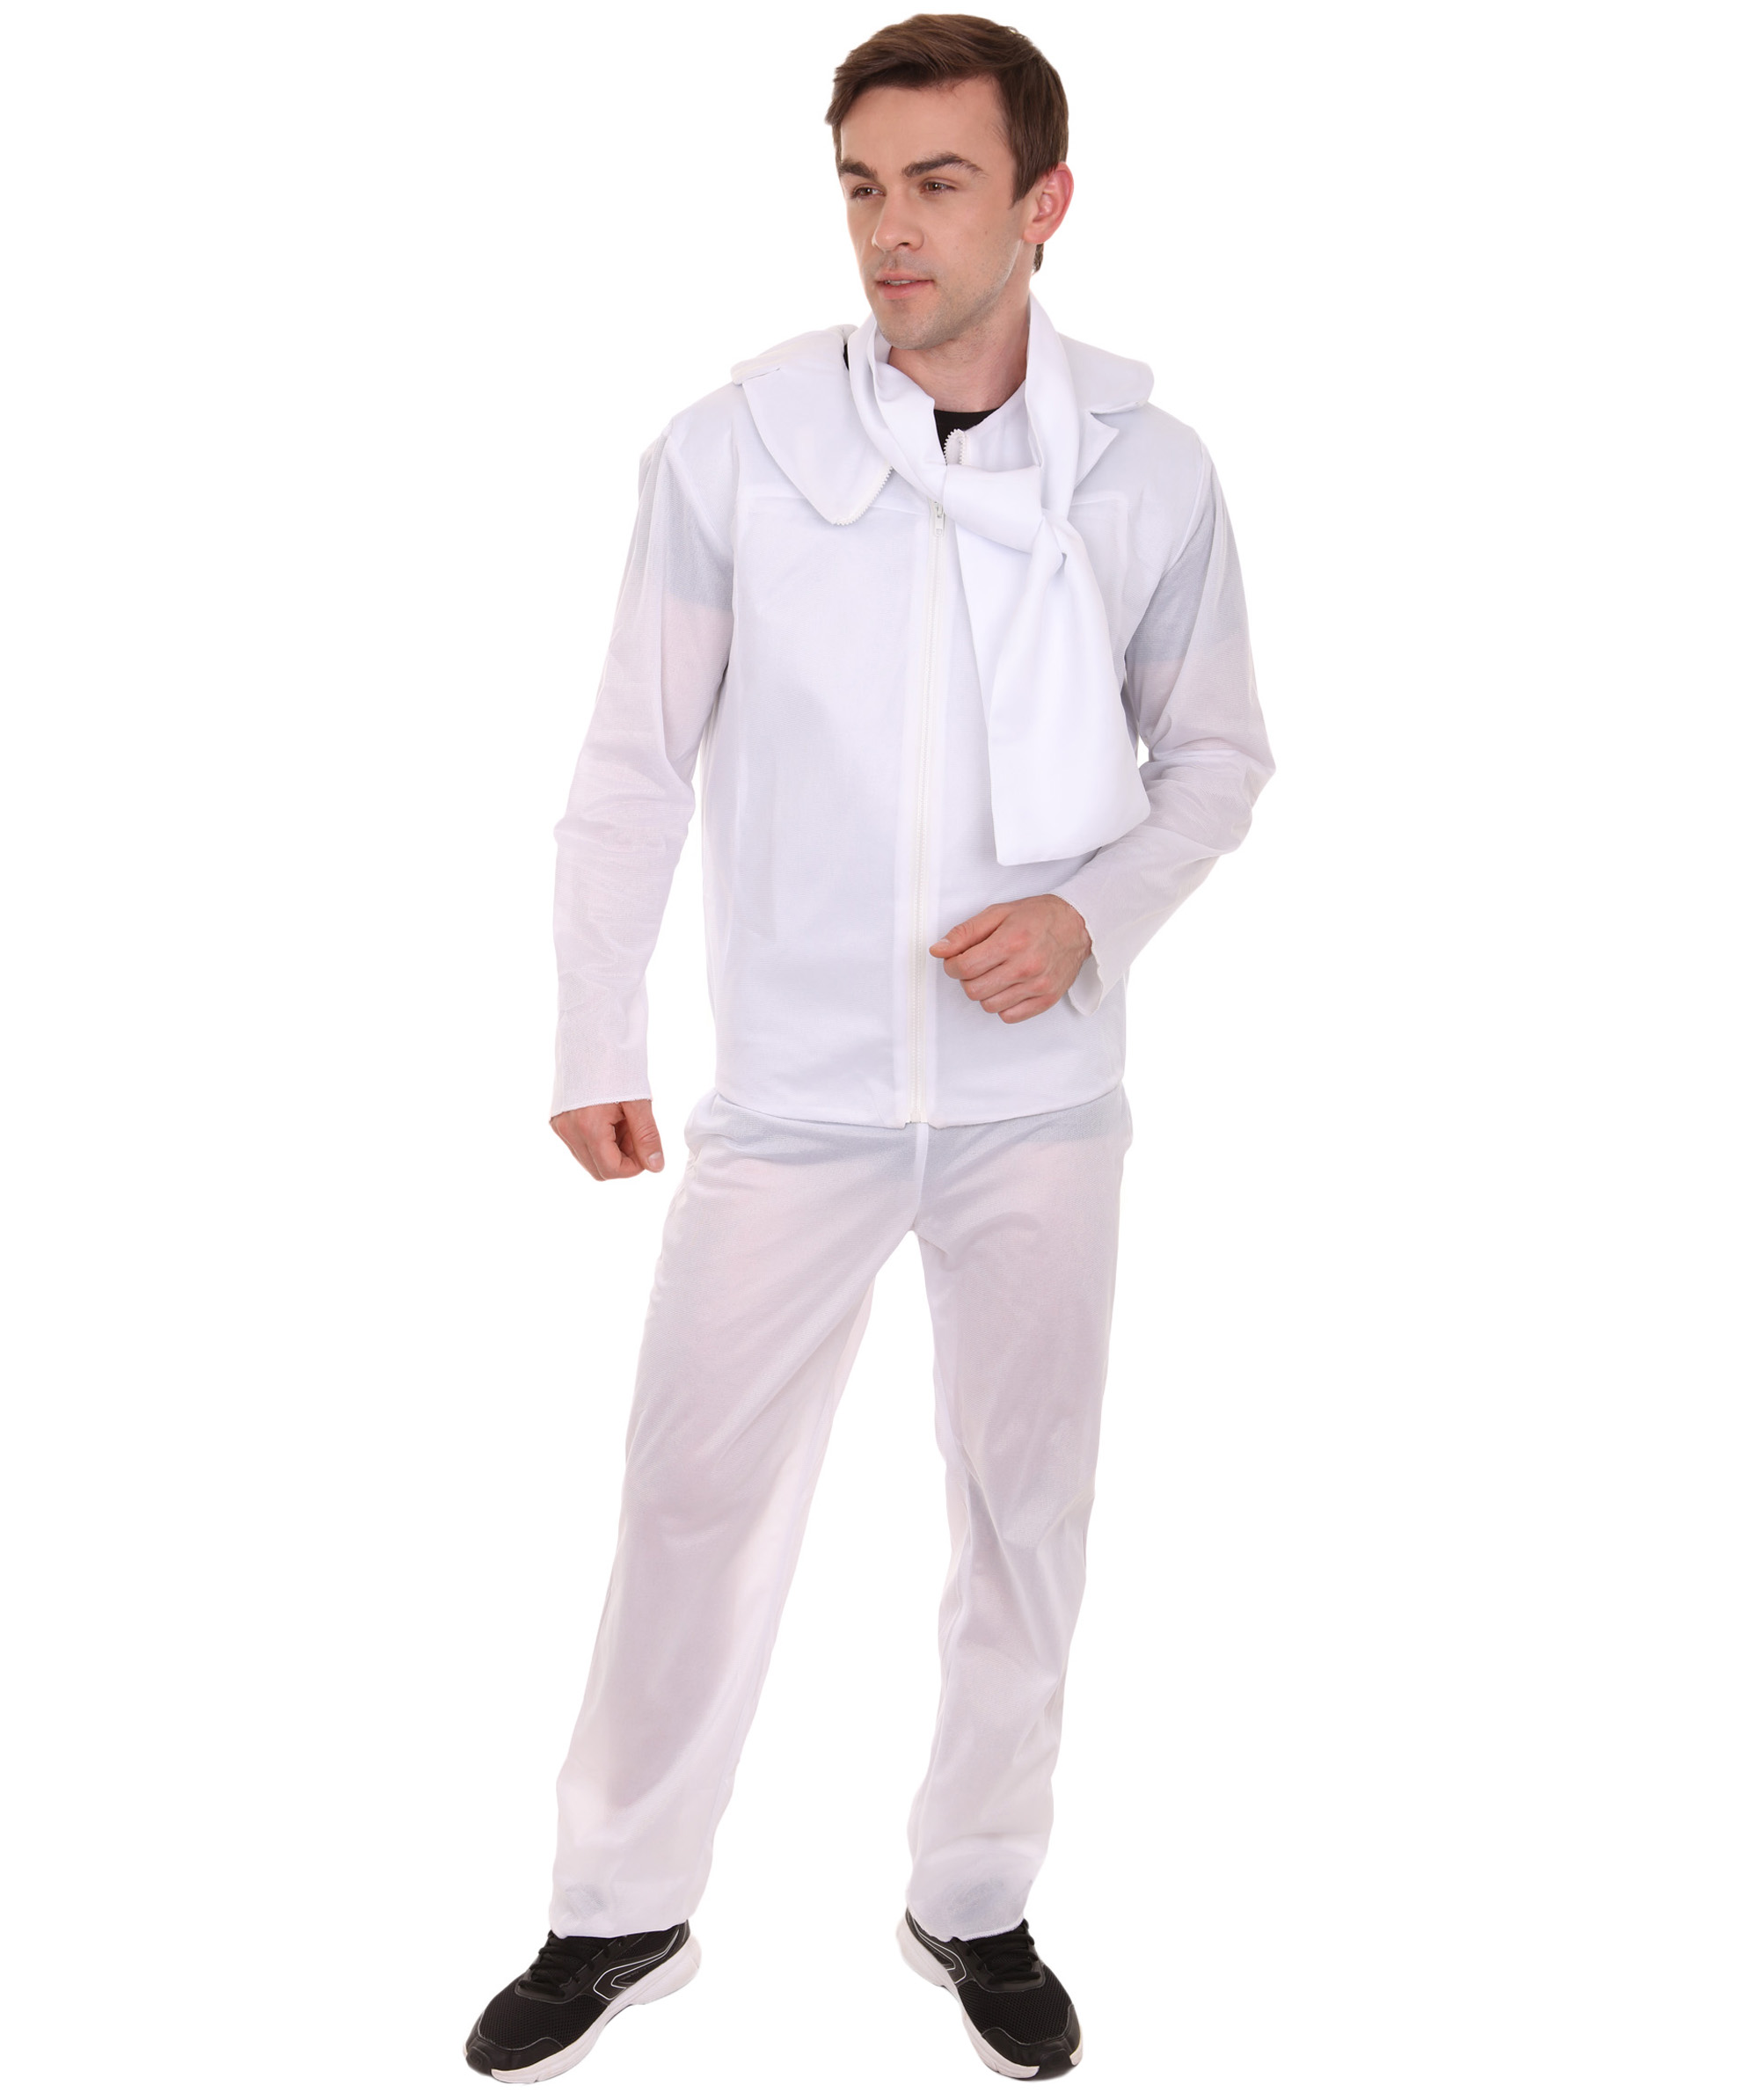 男性 JCP-053 のアニメ映画スーパーヴィラン衣装 ホワイトハロウィンコスチューム